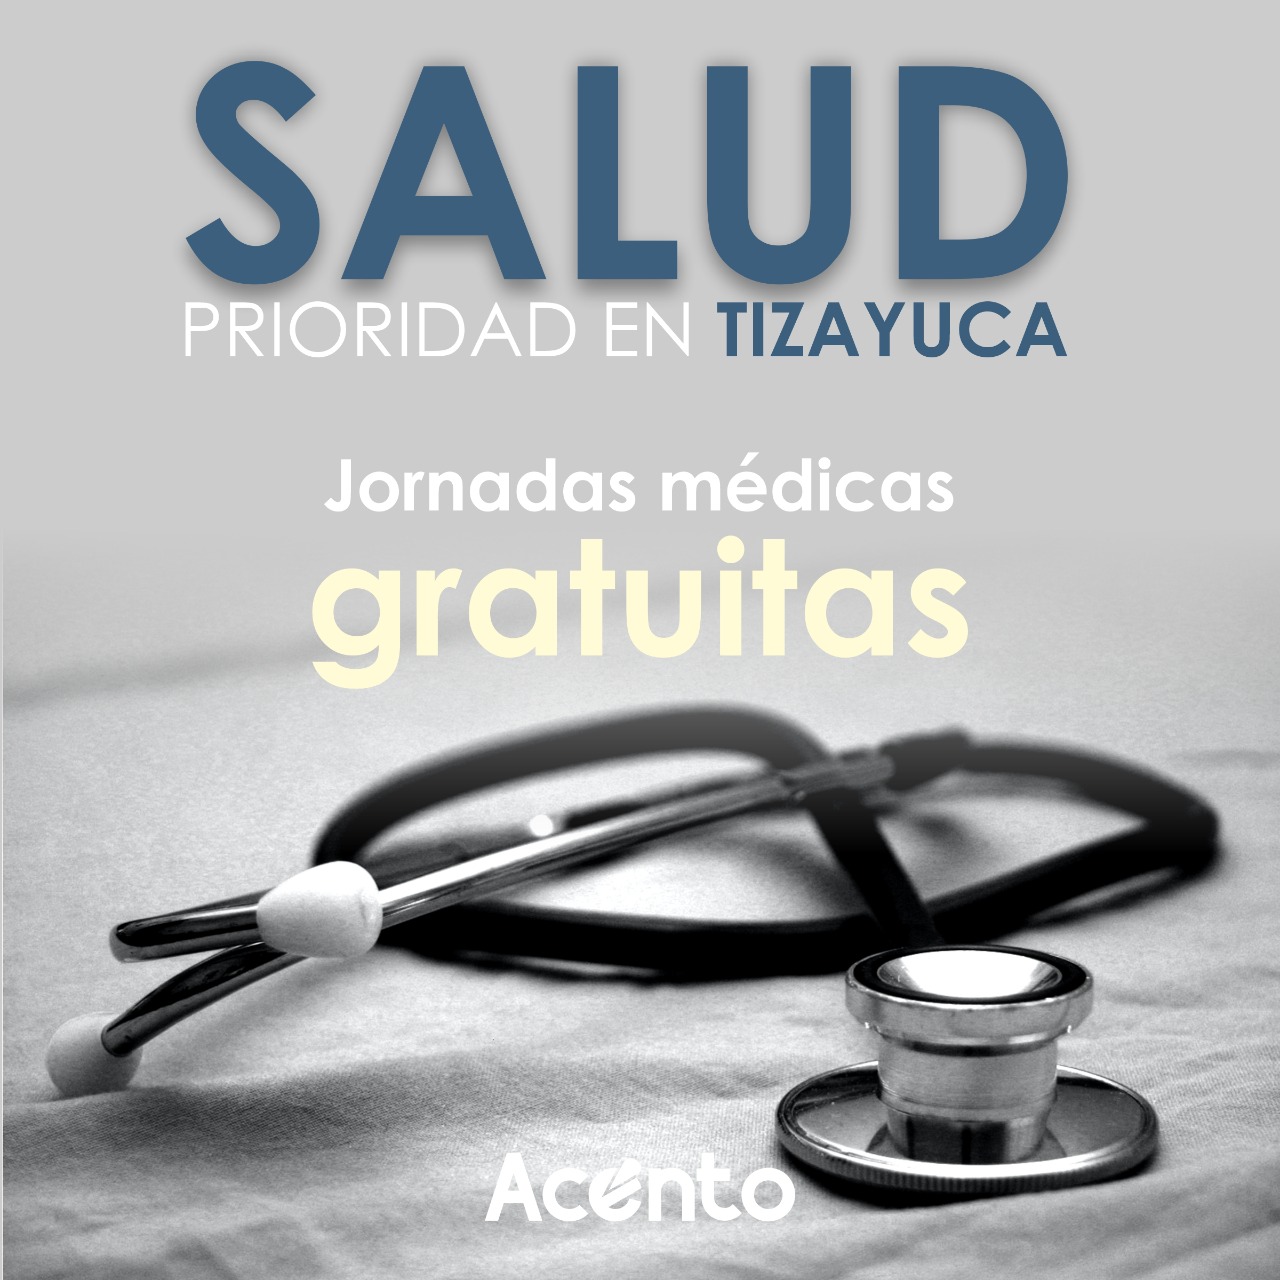 Un mes de jornadas médicas gratuitas en Tizayuca.